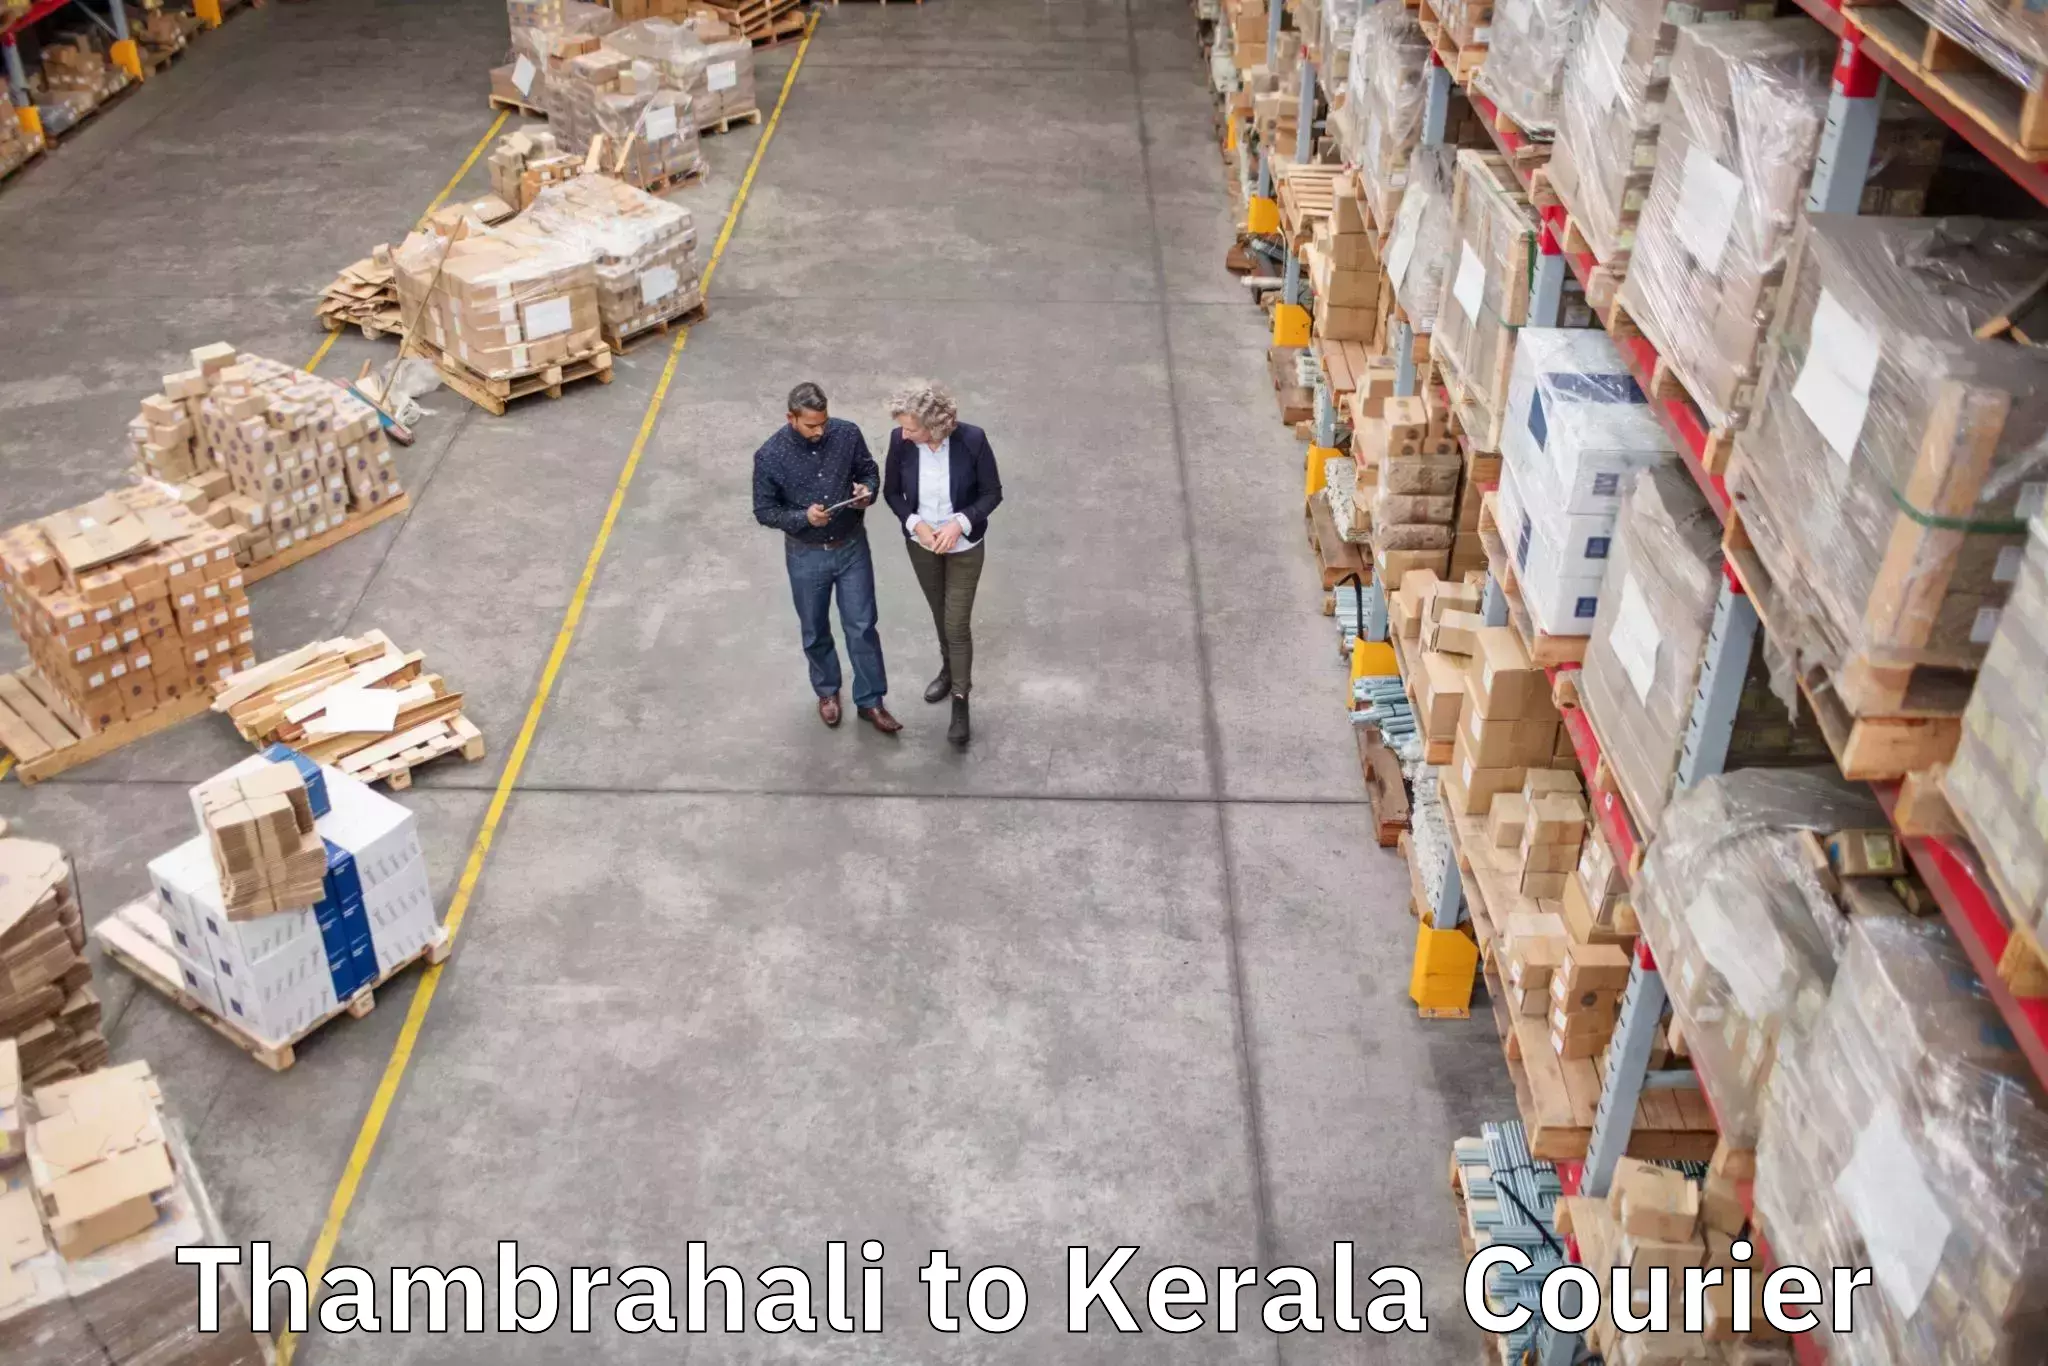 Baggage transport coordination Thambrahali to Kerala